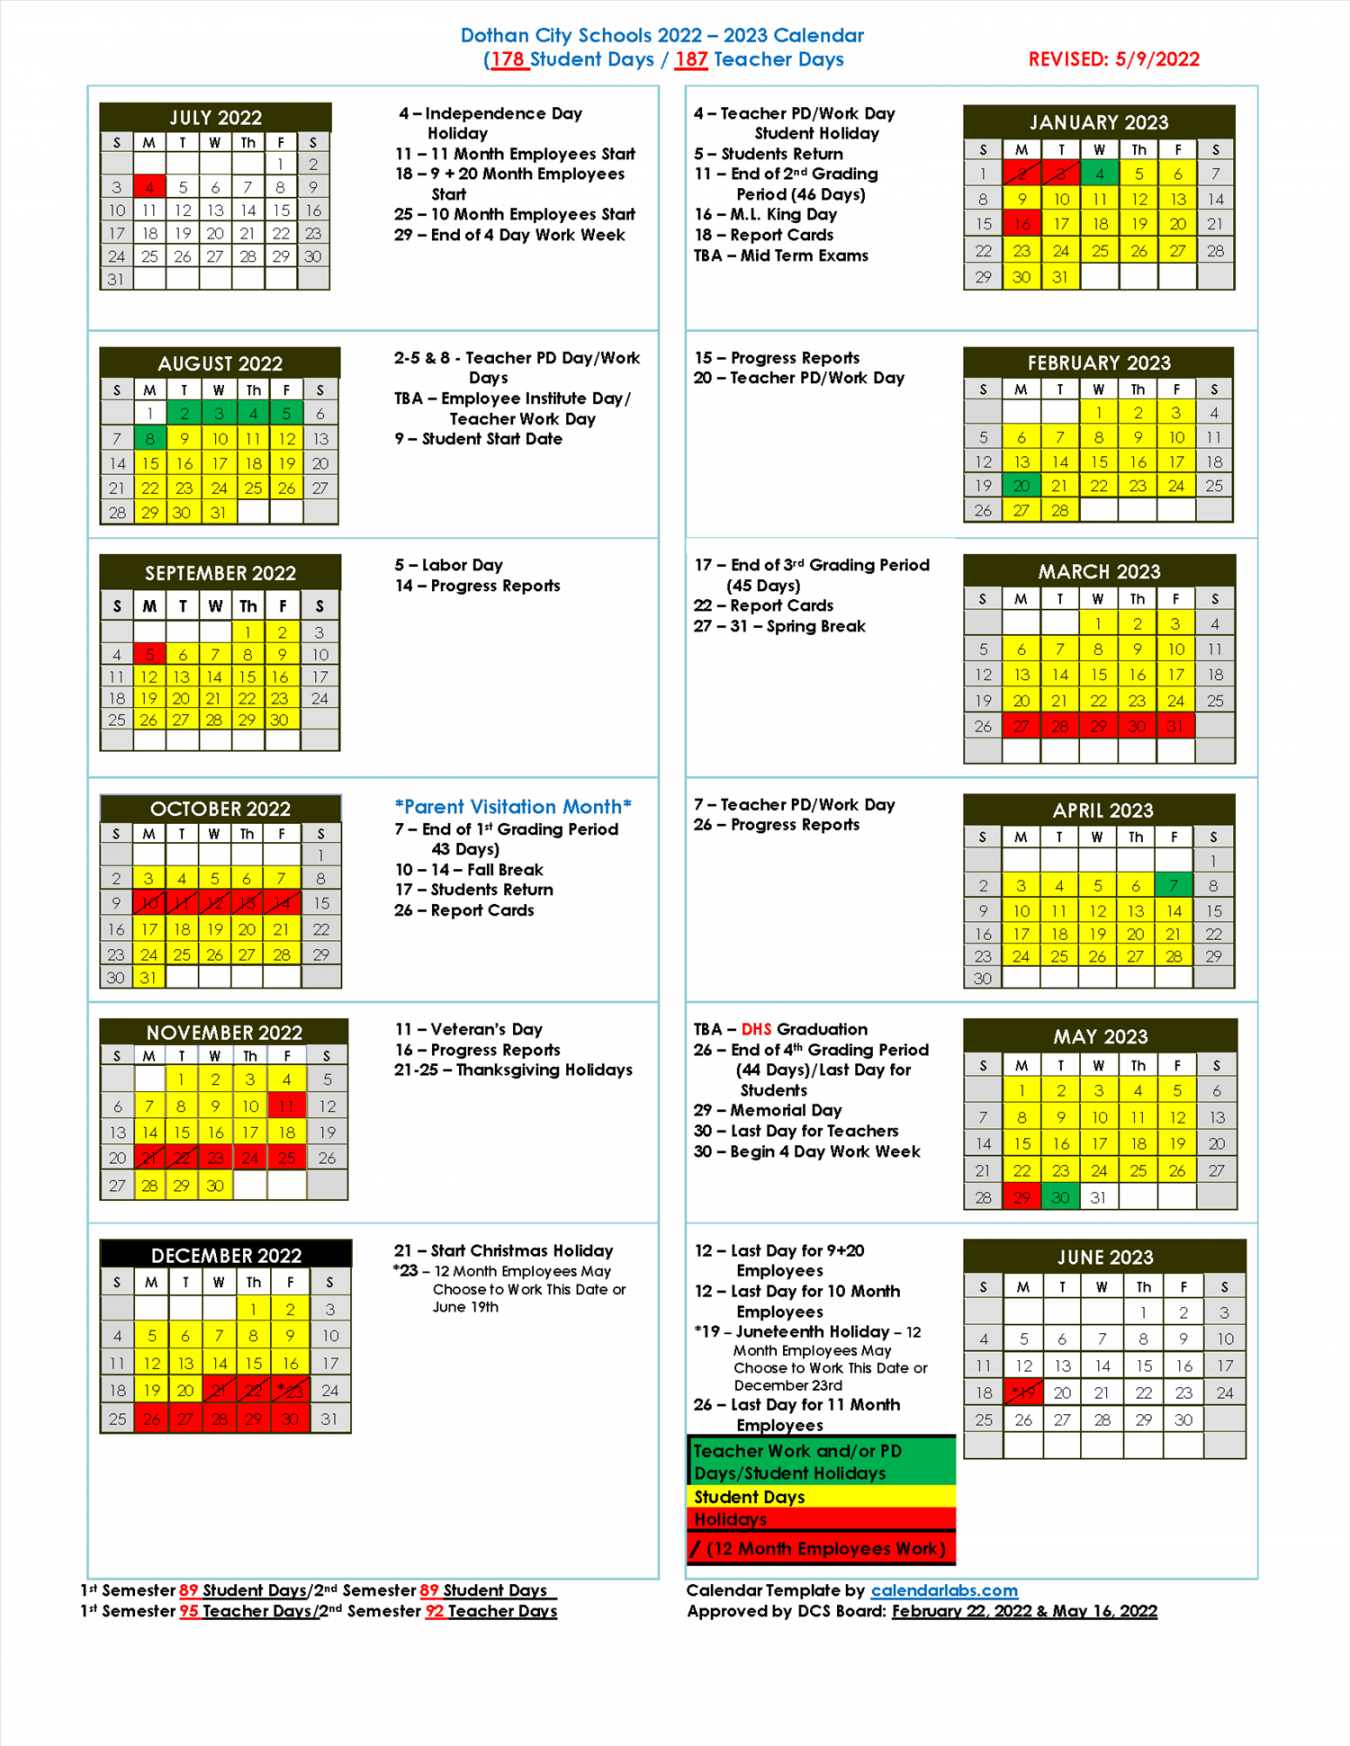 Dothan City Schools Releases - School Calendar